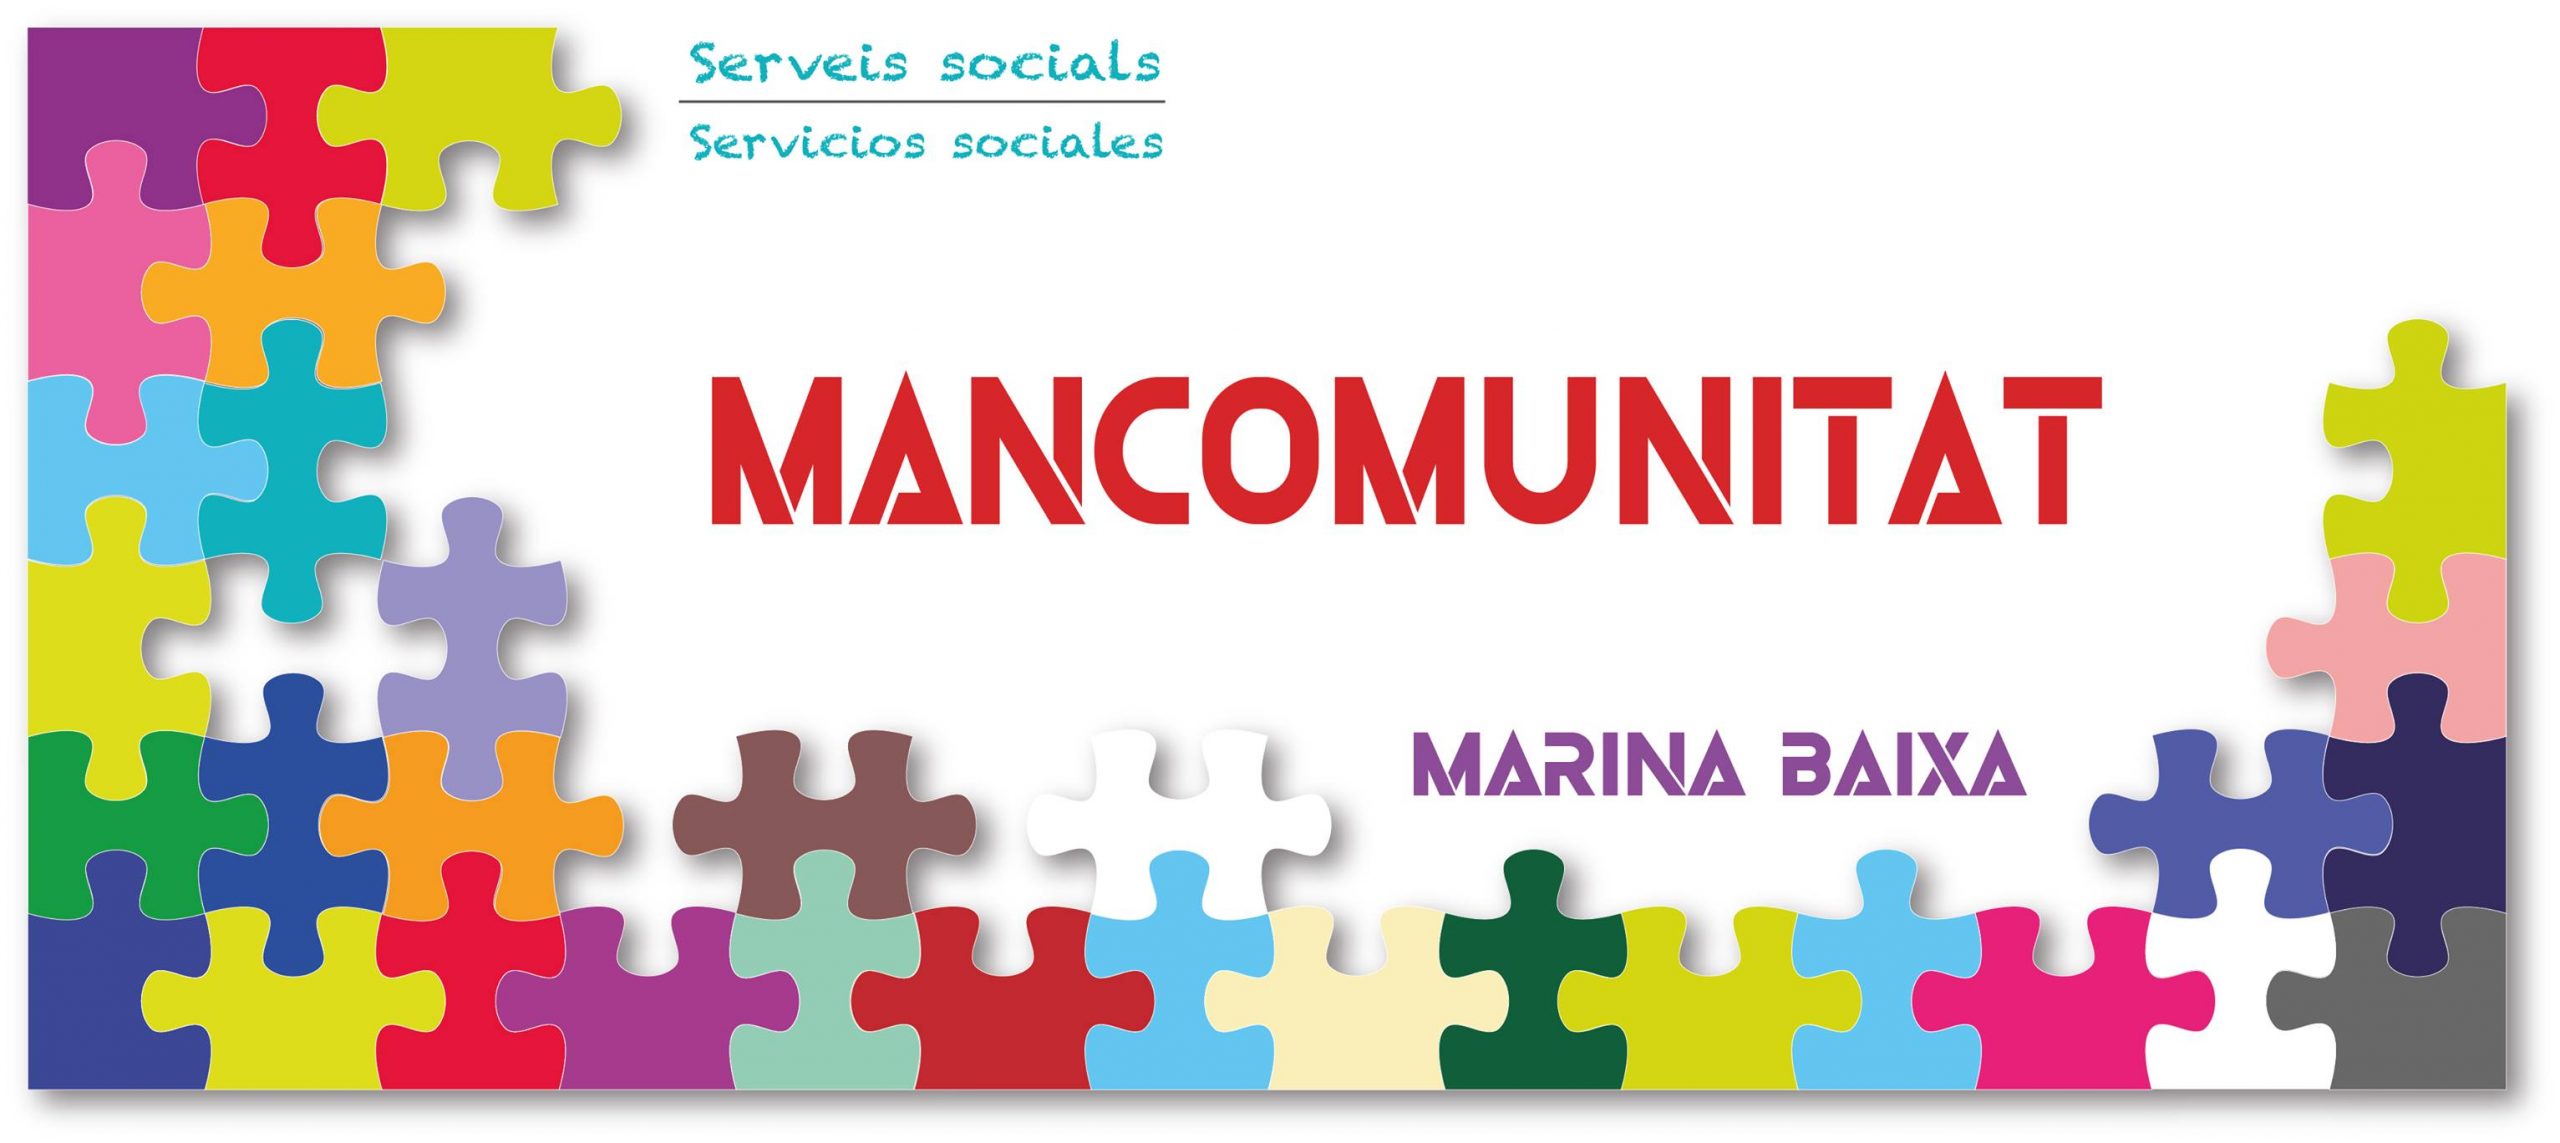 Incorporación como técnico asesor jurídico de servicios sociales en la Mancomunidad de Servicios Sociales Marina Baixa con sede en Callosa d’en Sarriá.